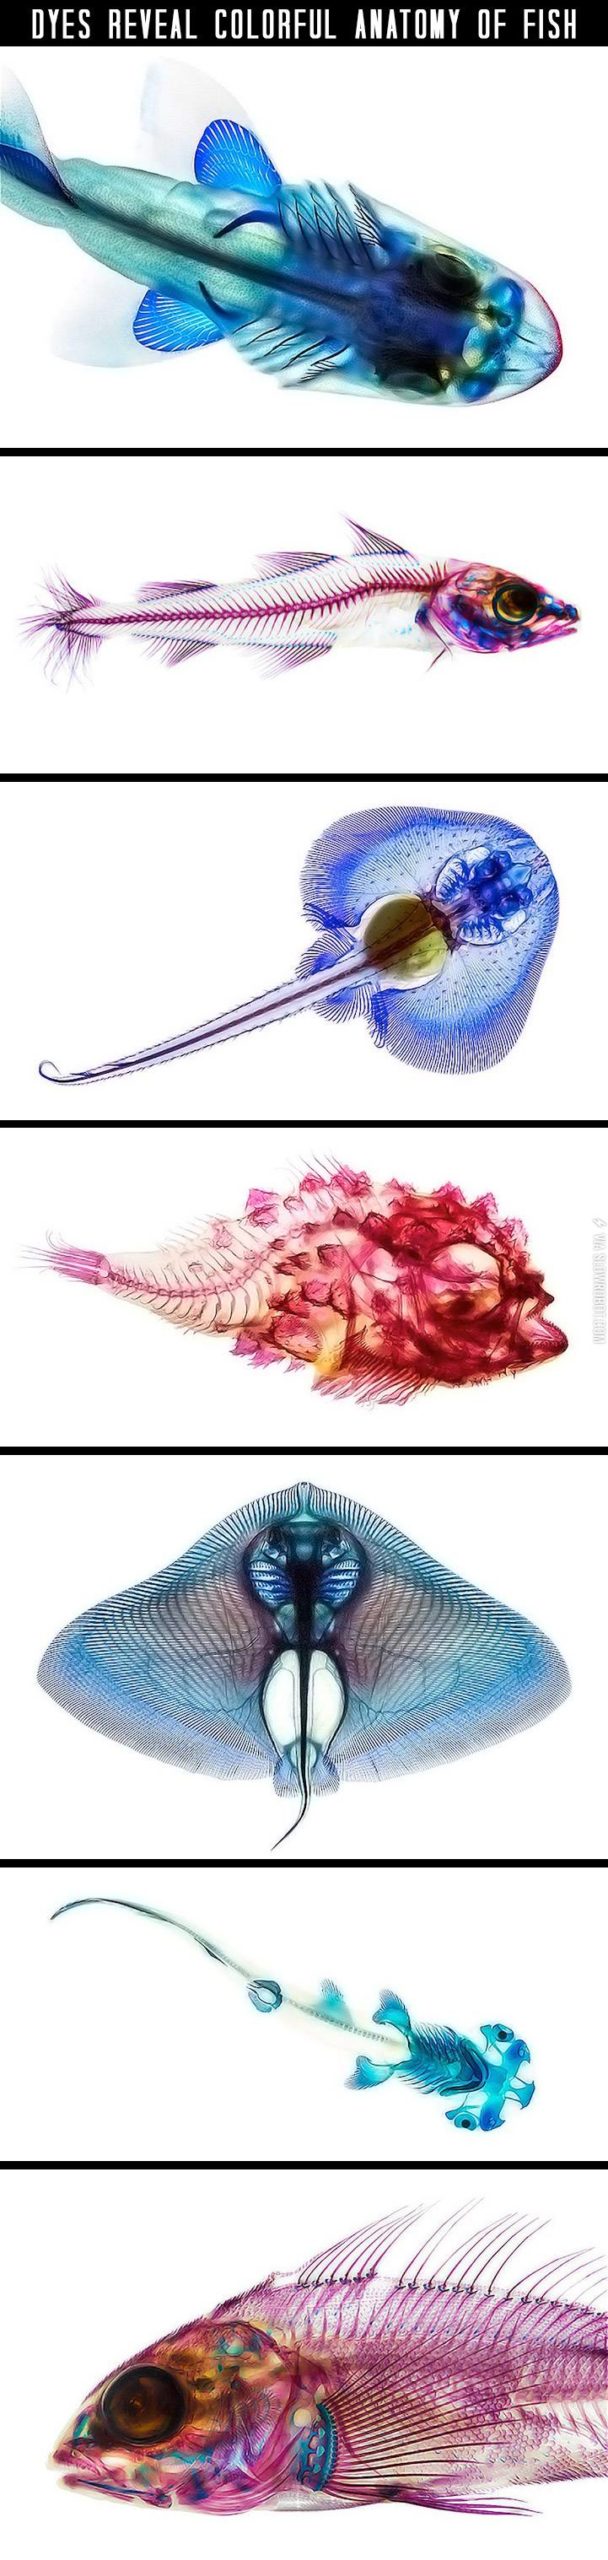 Anatomy+of+fish.